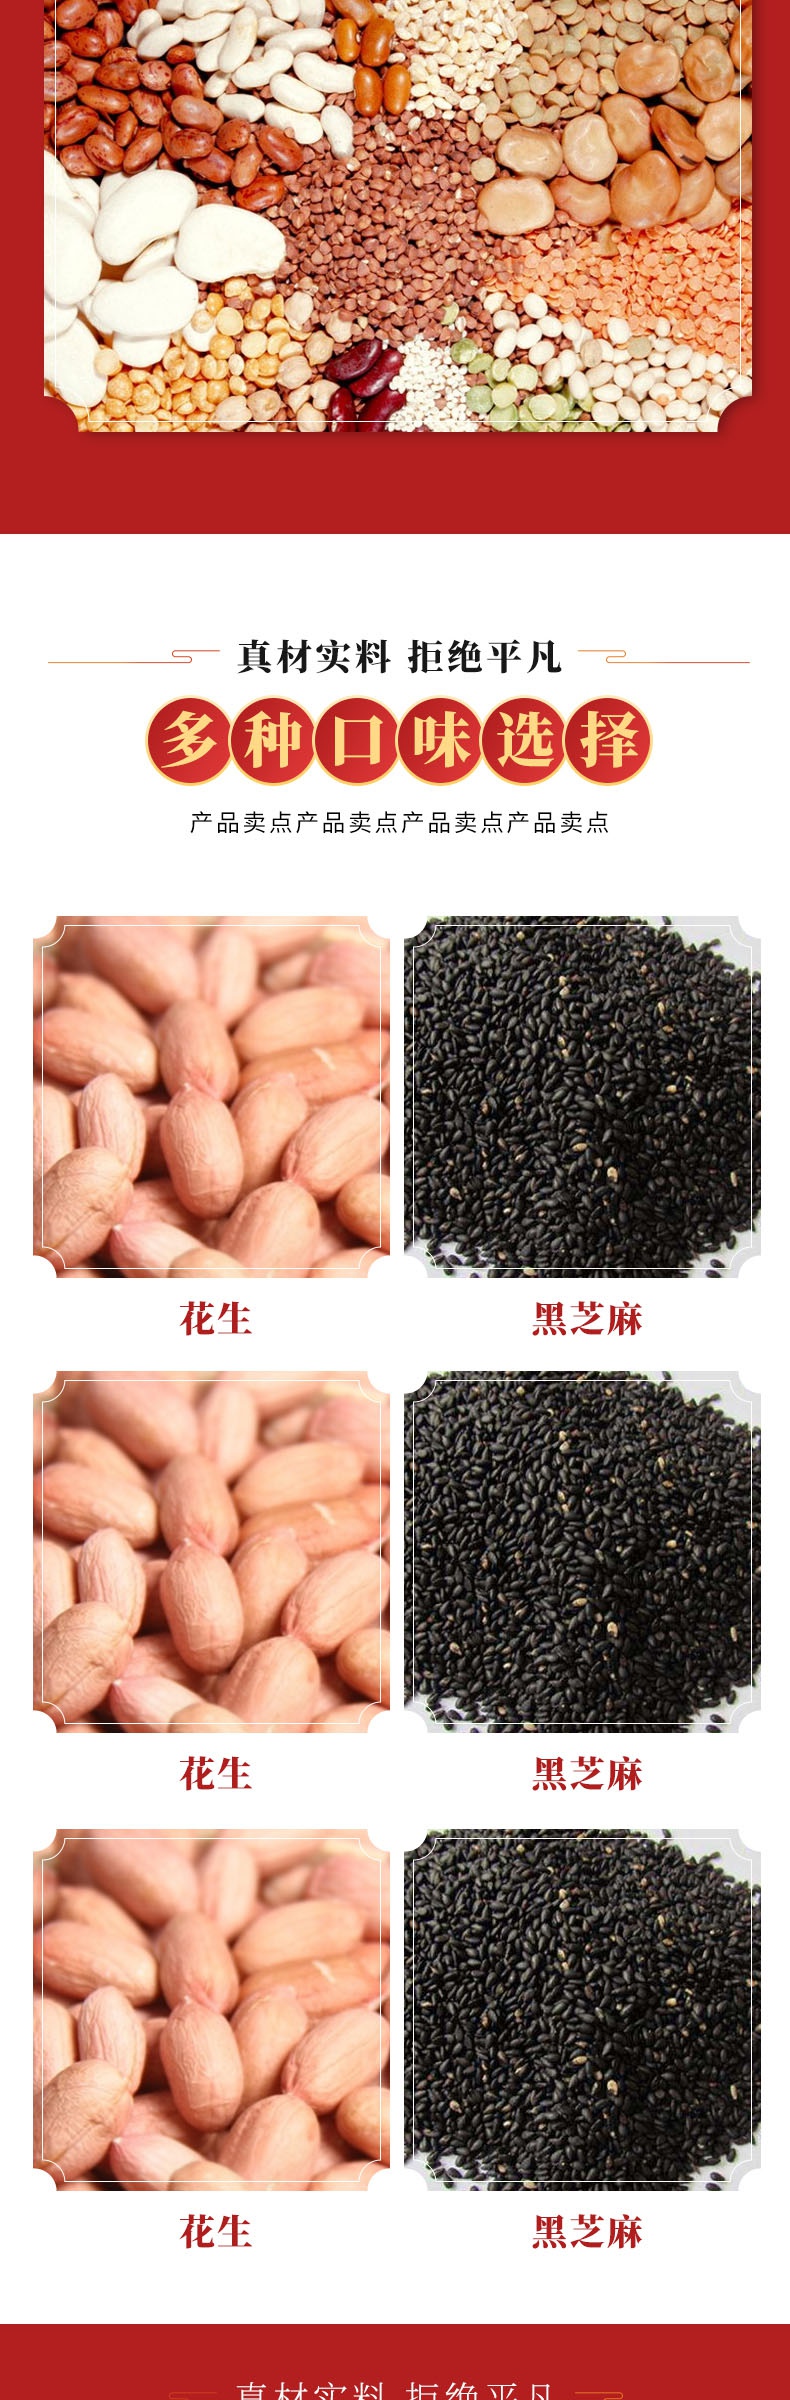 中国风元宵节食品详情页产品描述页